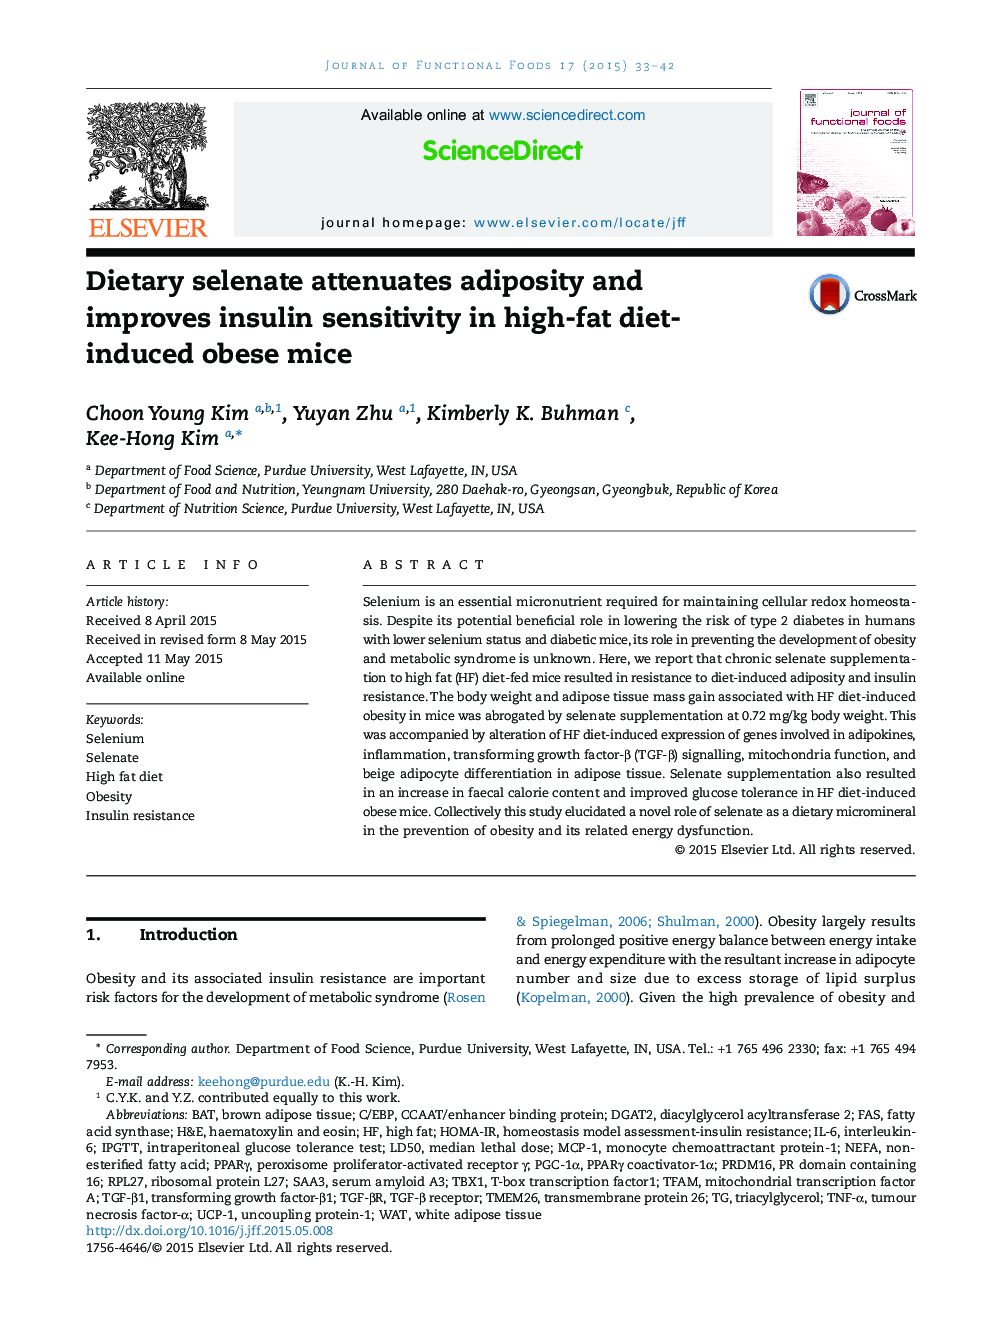 سلنیت غذایی سبب کاهش چربی و بهبود حساسیت به انسولین در موش های چاق شده ناشی از رژیم غذایی با چربی می شود 